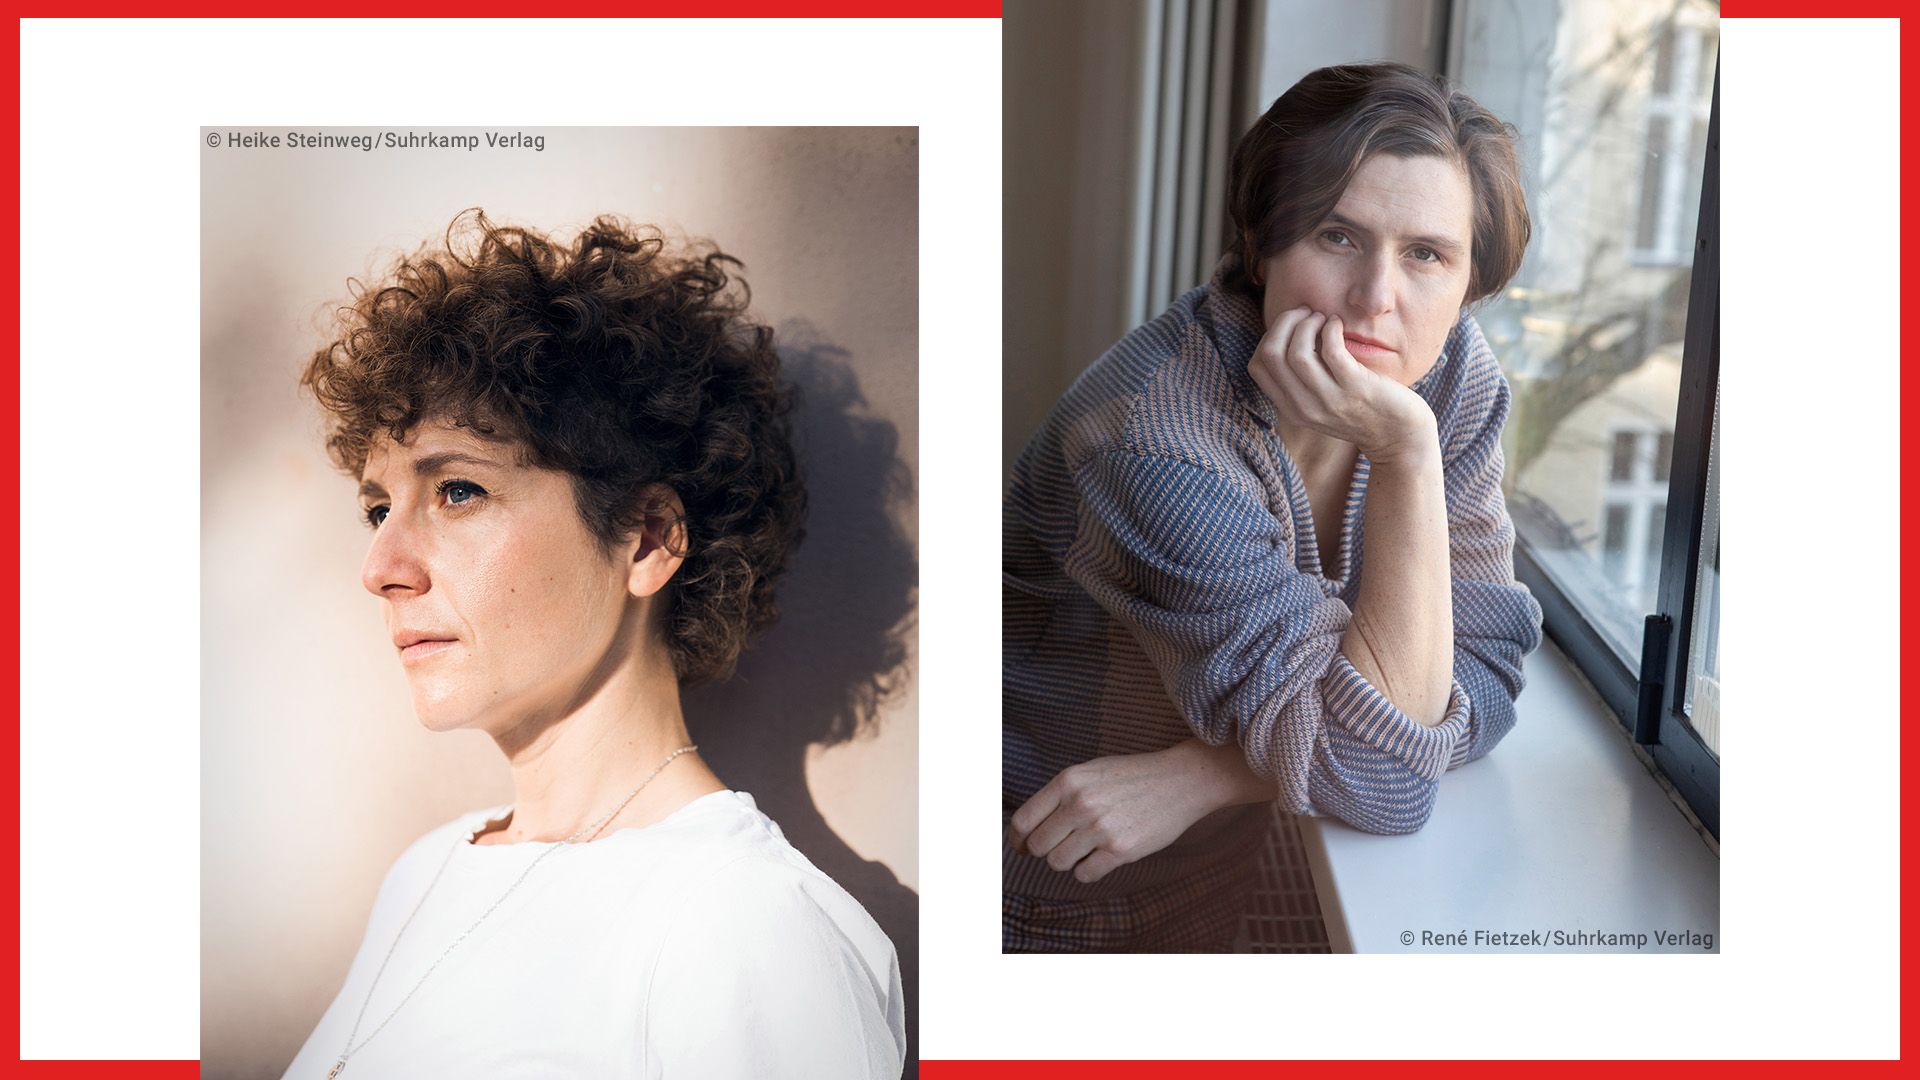 Beitrag zu WORTMELDUNGEN Literaturpreis 2023: Shortlist nominations for Sasha Marianna Salzmann and Judith Schalansky